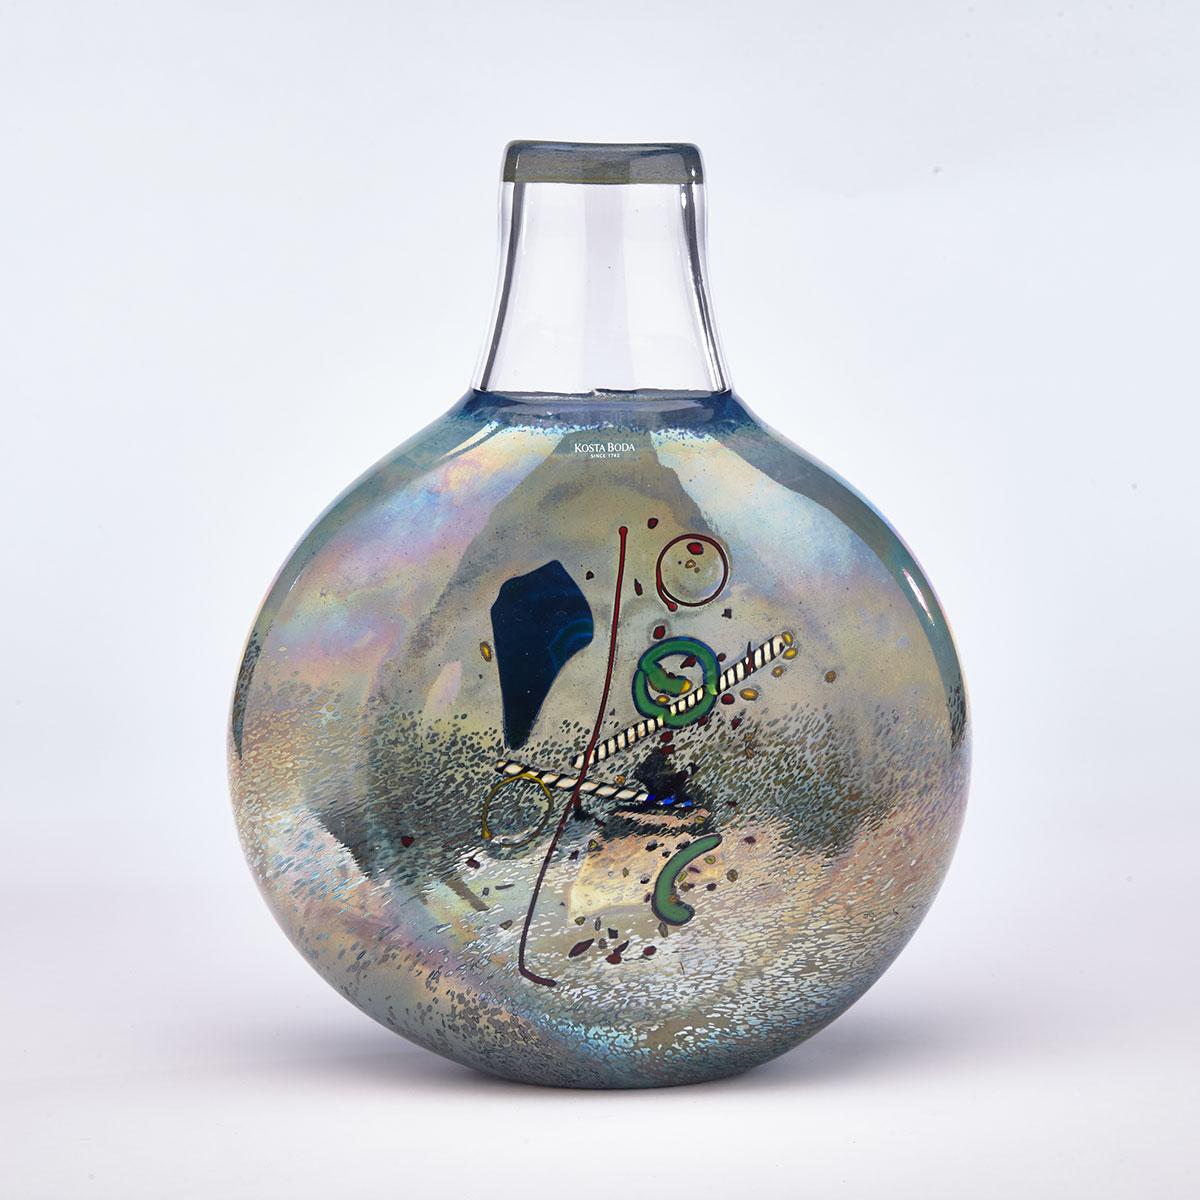 Bertil Vallien (Swedish, b.1938) for Kosta Boda, Iridescent Glass Vase, c.2000